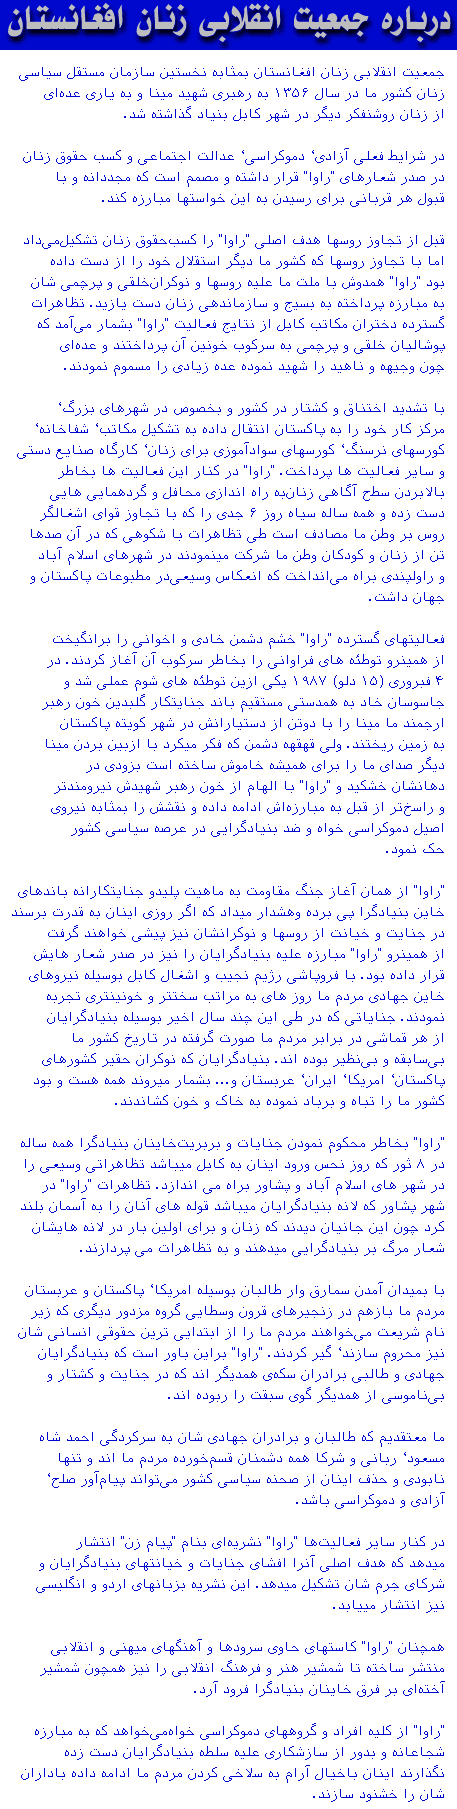 About RAWA... (in Farsi)